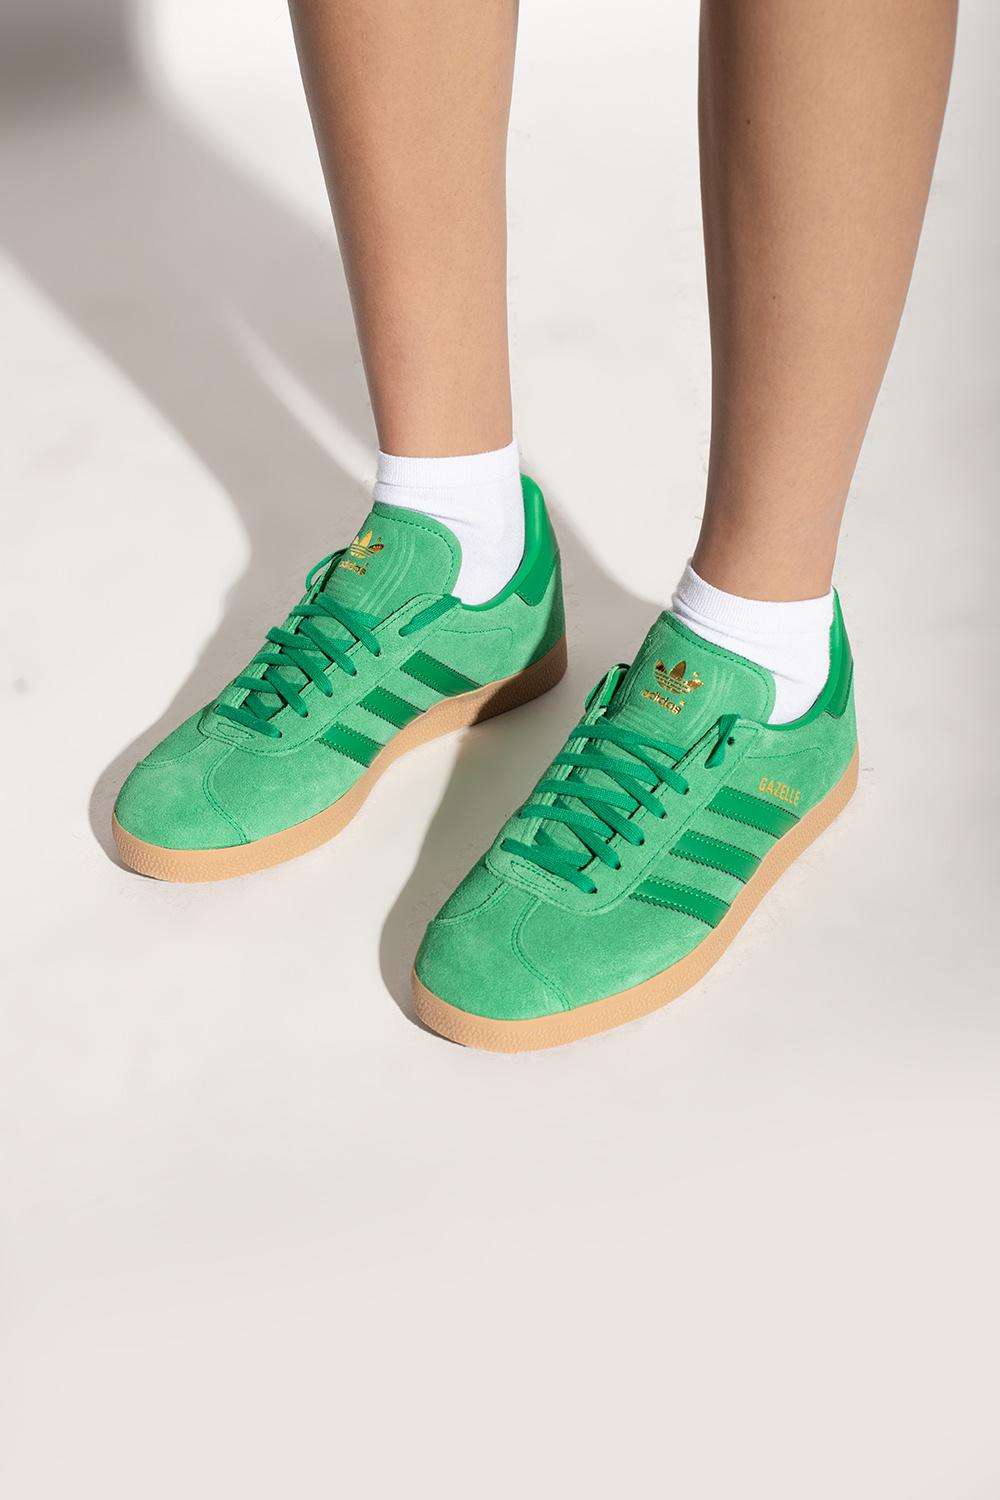 jury haar Dakloos adidas Originals 'gazelle' Sneakers in Green | Lyst